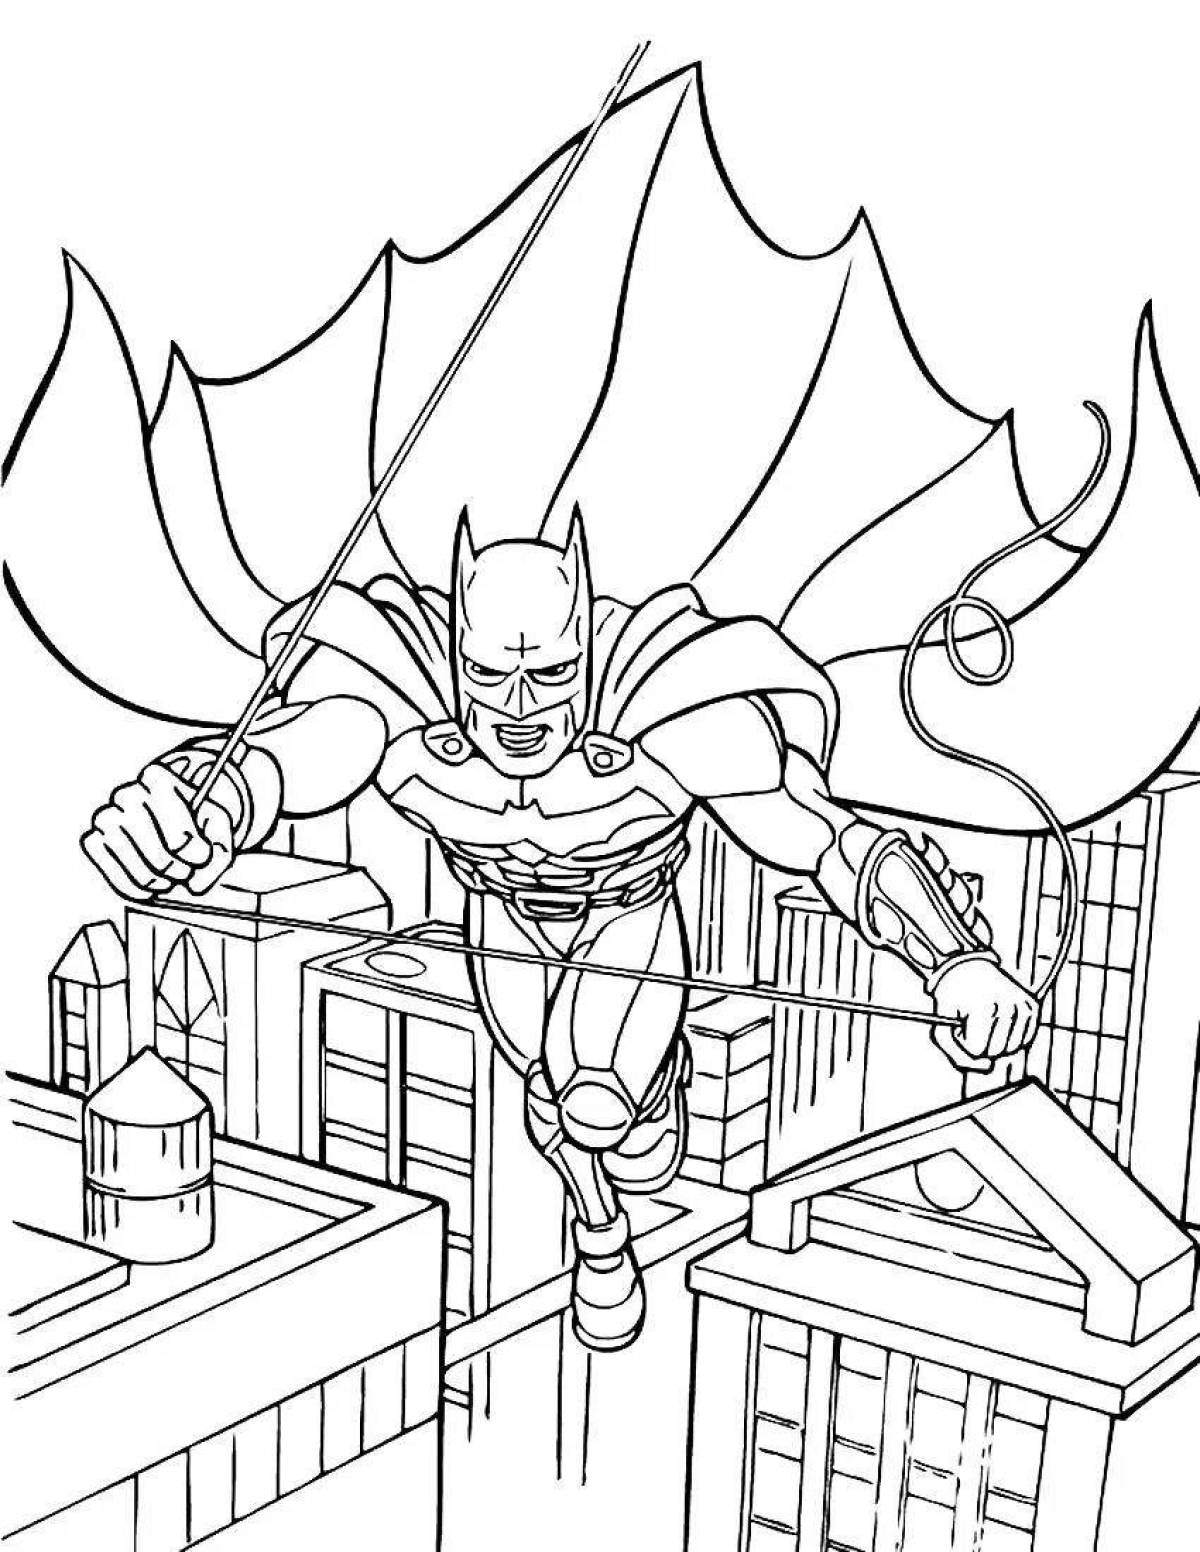 Big batman coloring book